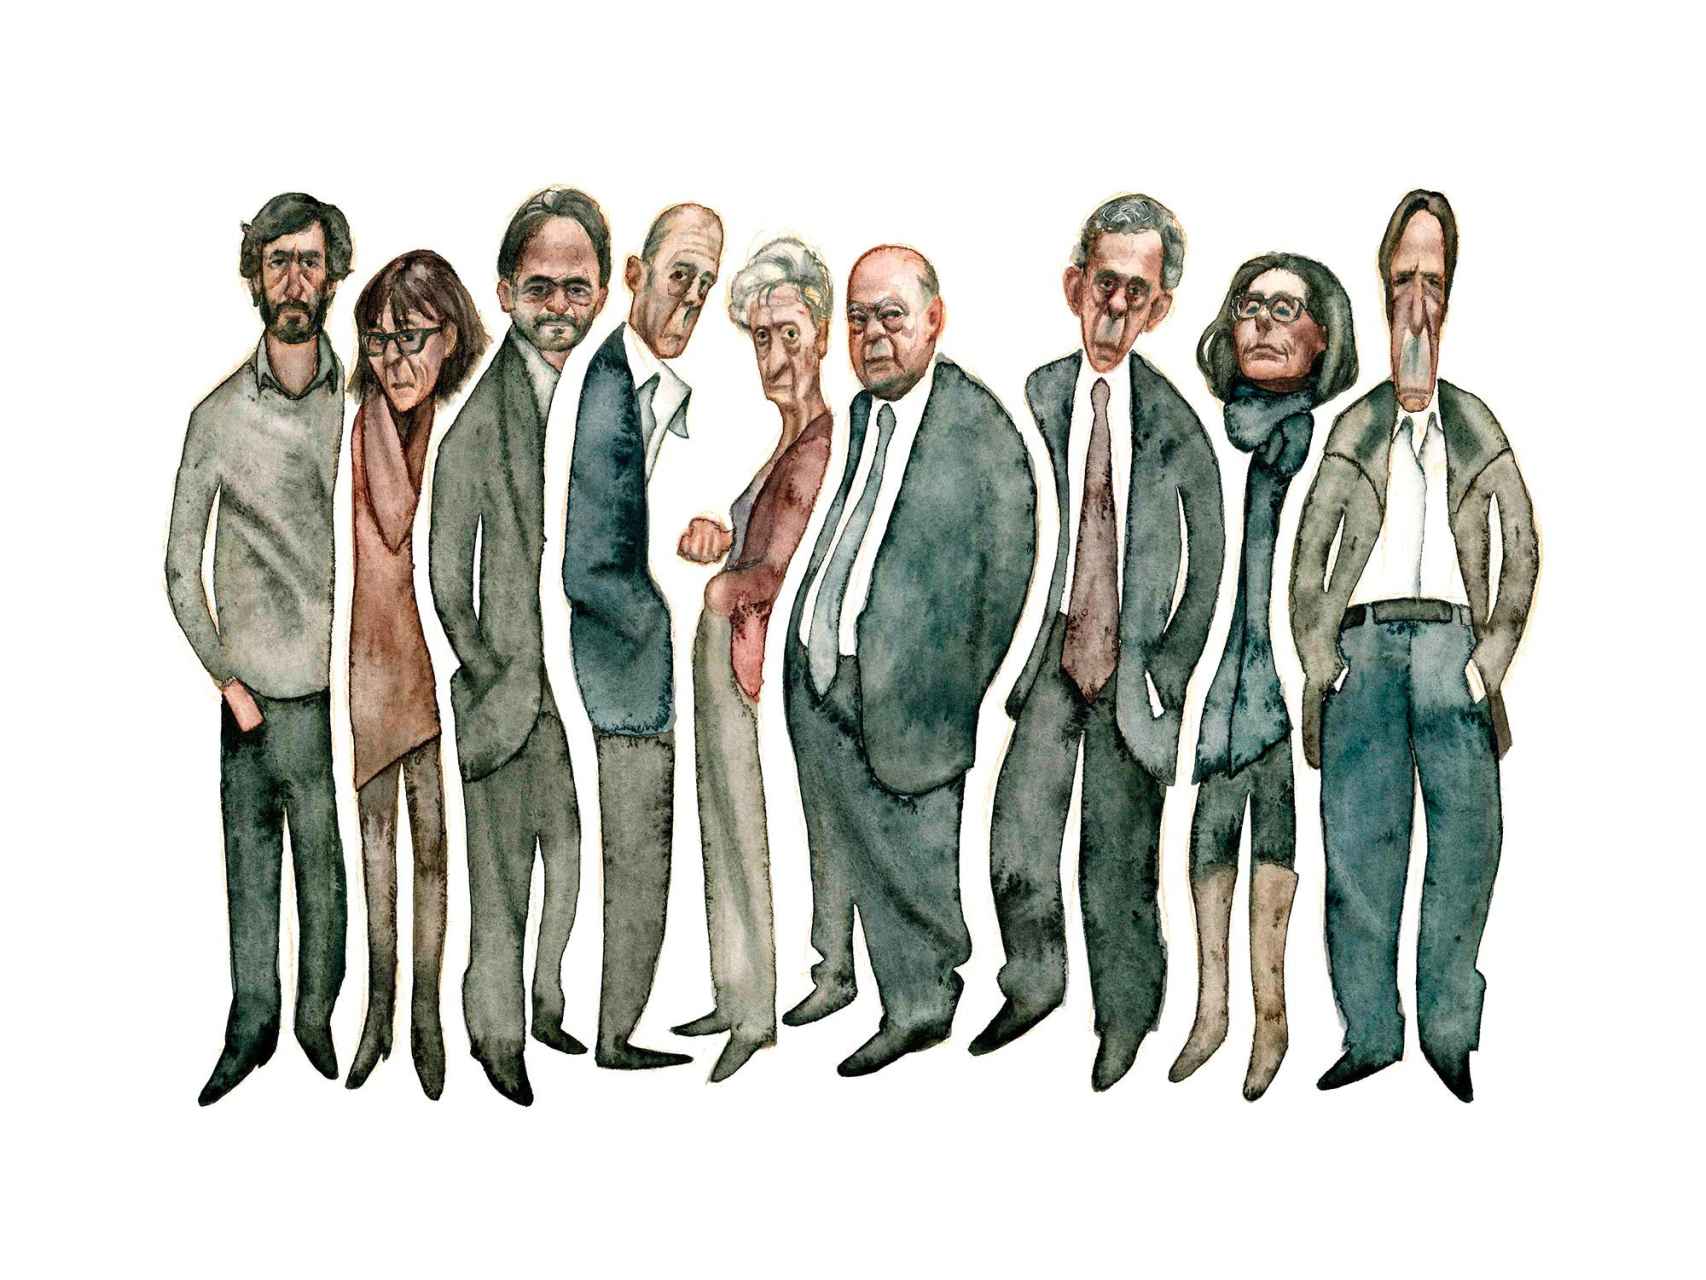 Los nueve miembros de la familia Pujol, con el expresidente catalán y su mujer en el centro. / Carlos Rodríguez Casado